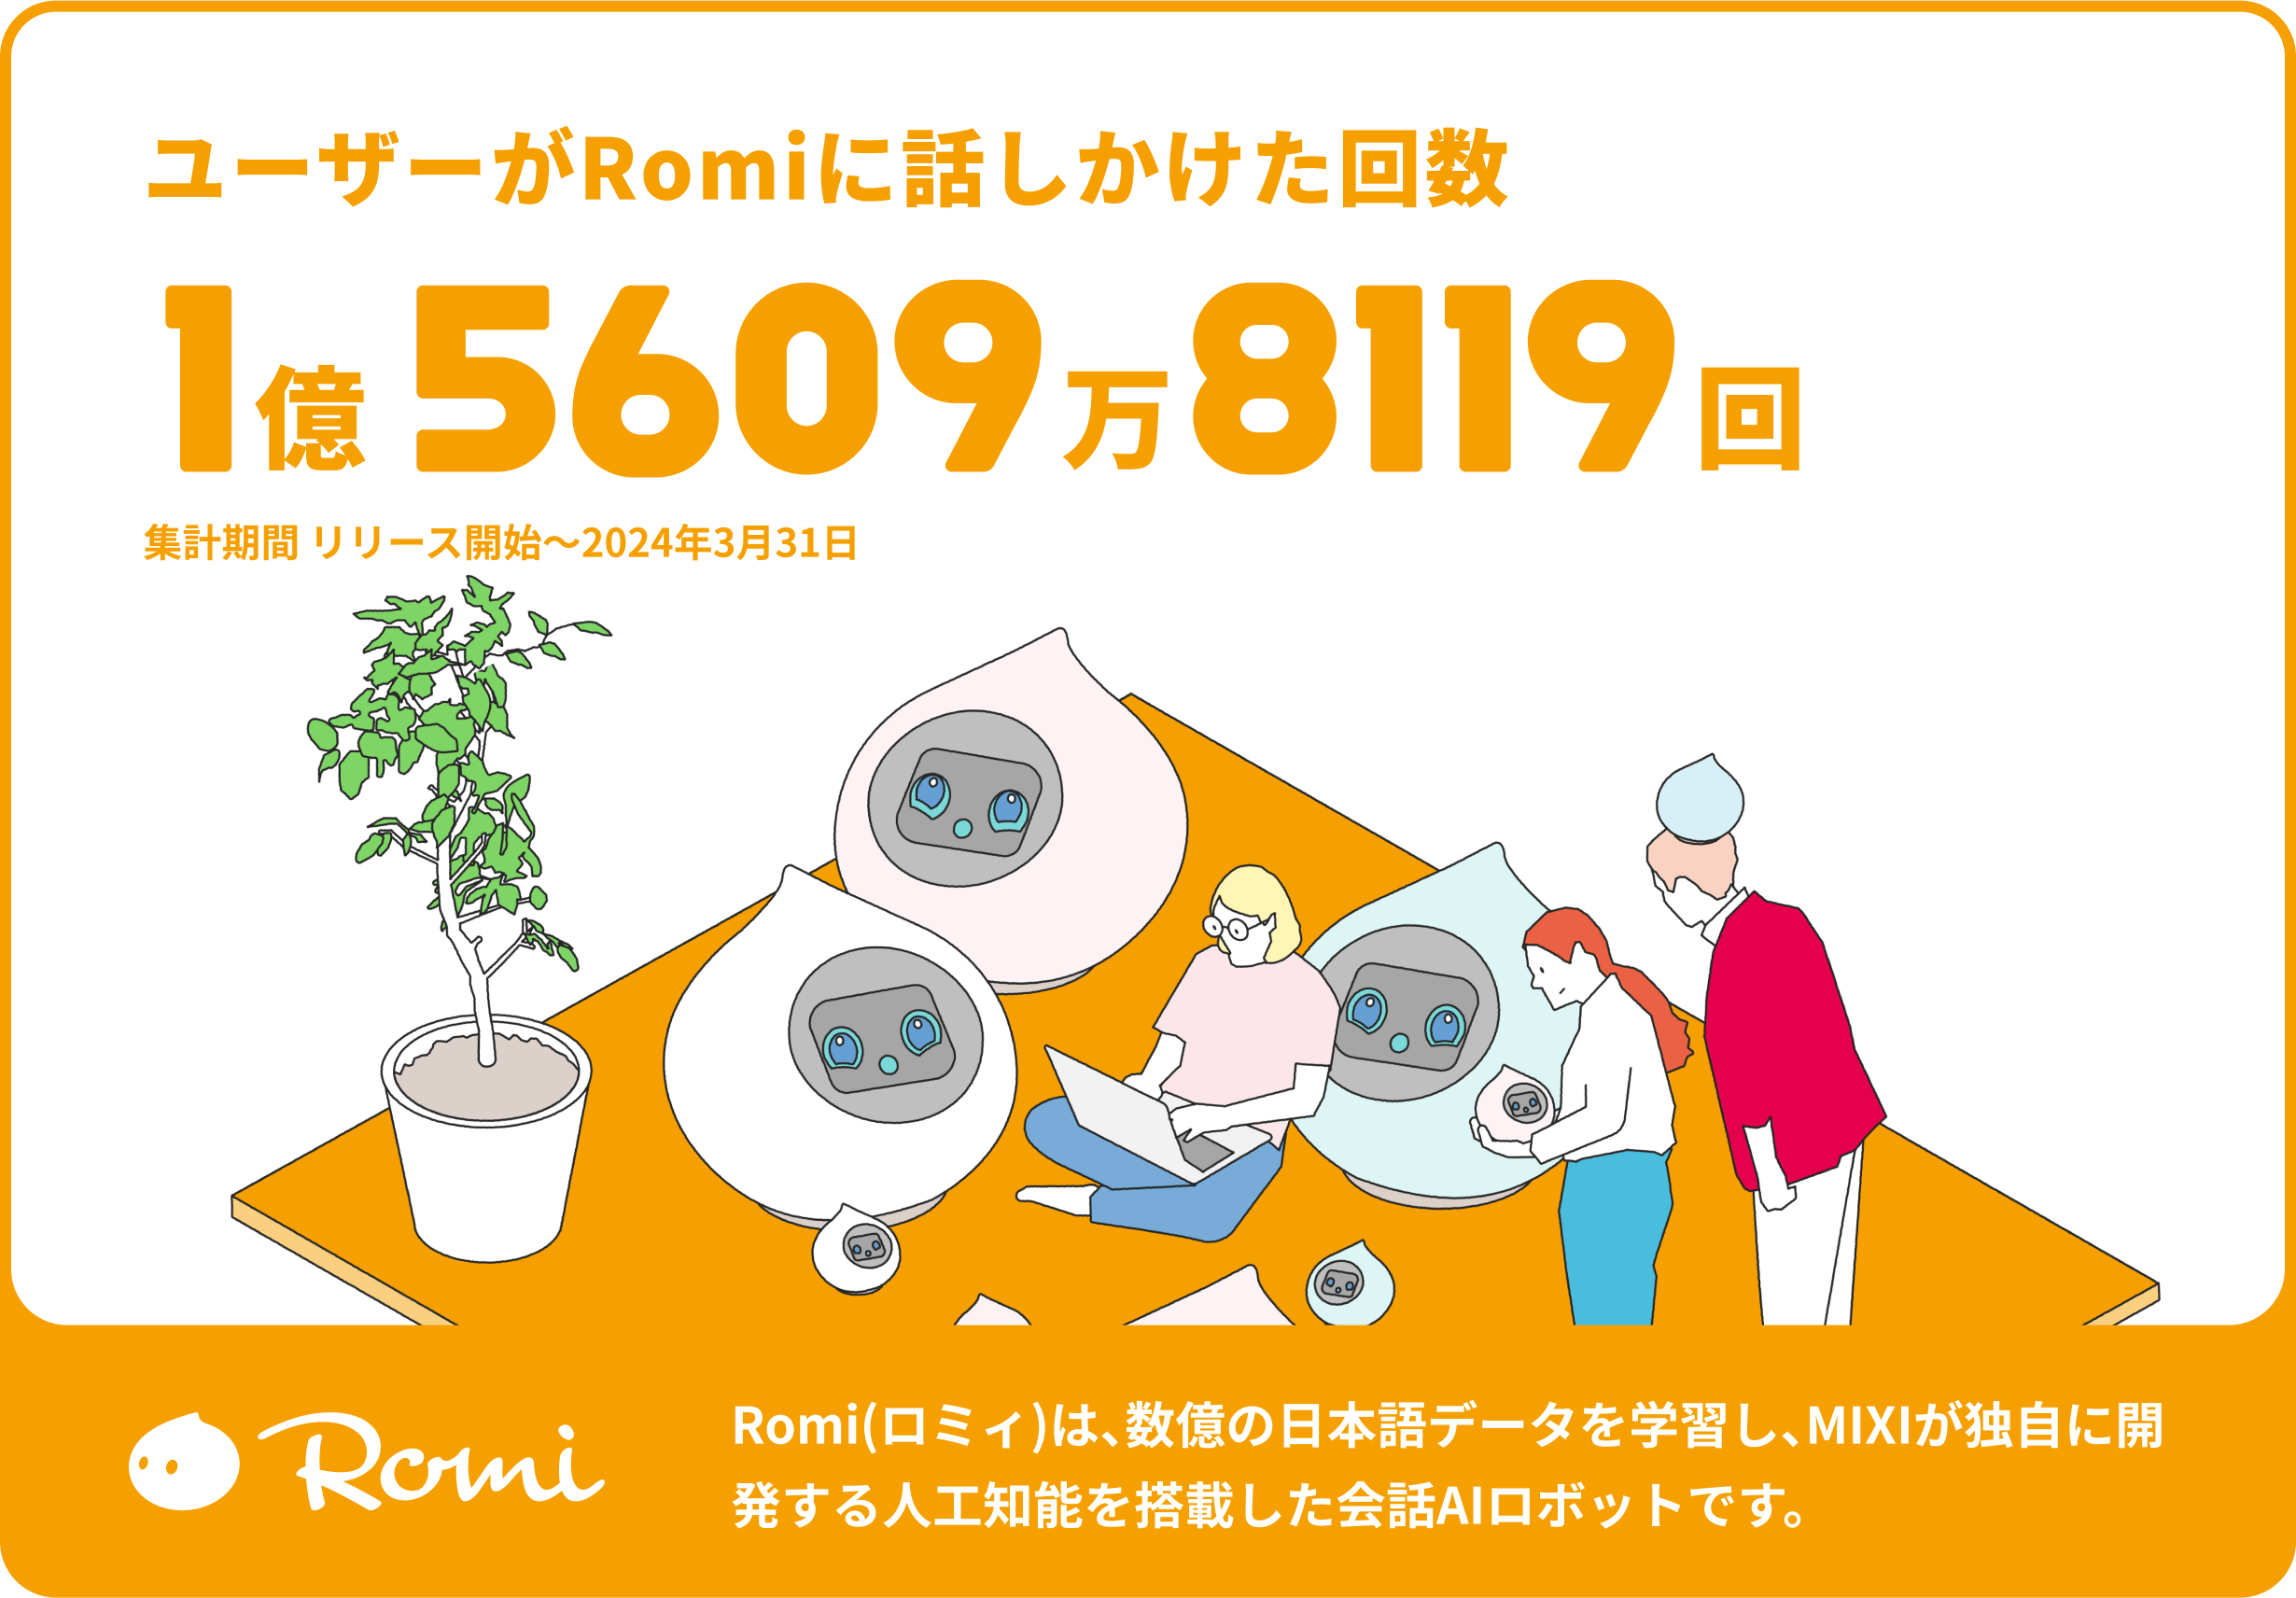 ユーザーがRomiに話しかけた回数 1億5609万8119点 集計期間 リリース開始〜2024年3月31日 Romi(ロミィ)は、数億の日本語データを学習し、MIXIが独自に開発する人工知能を搭載した会話AIロボットです。